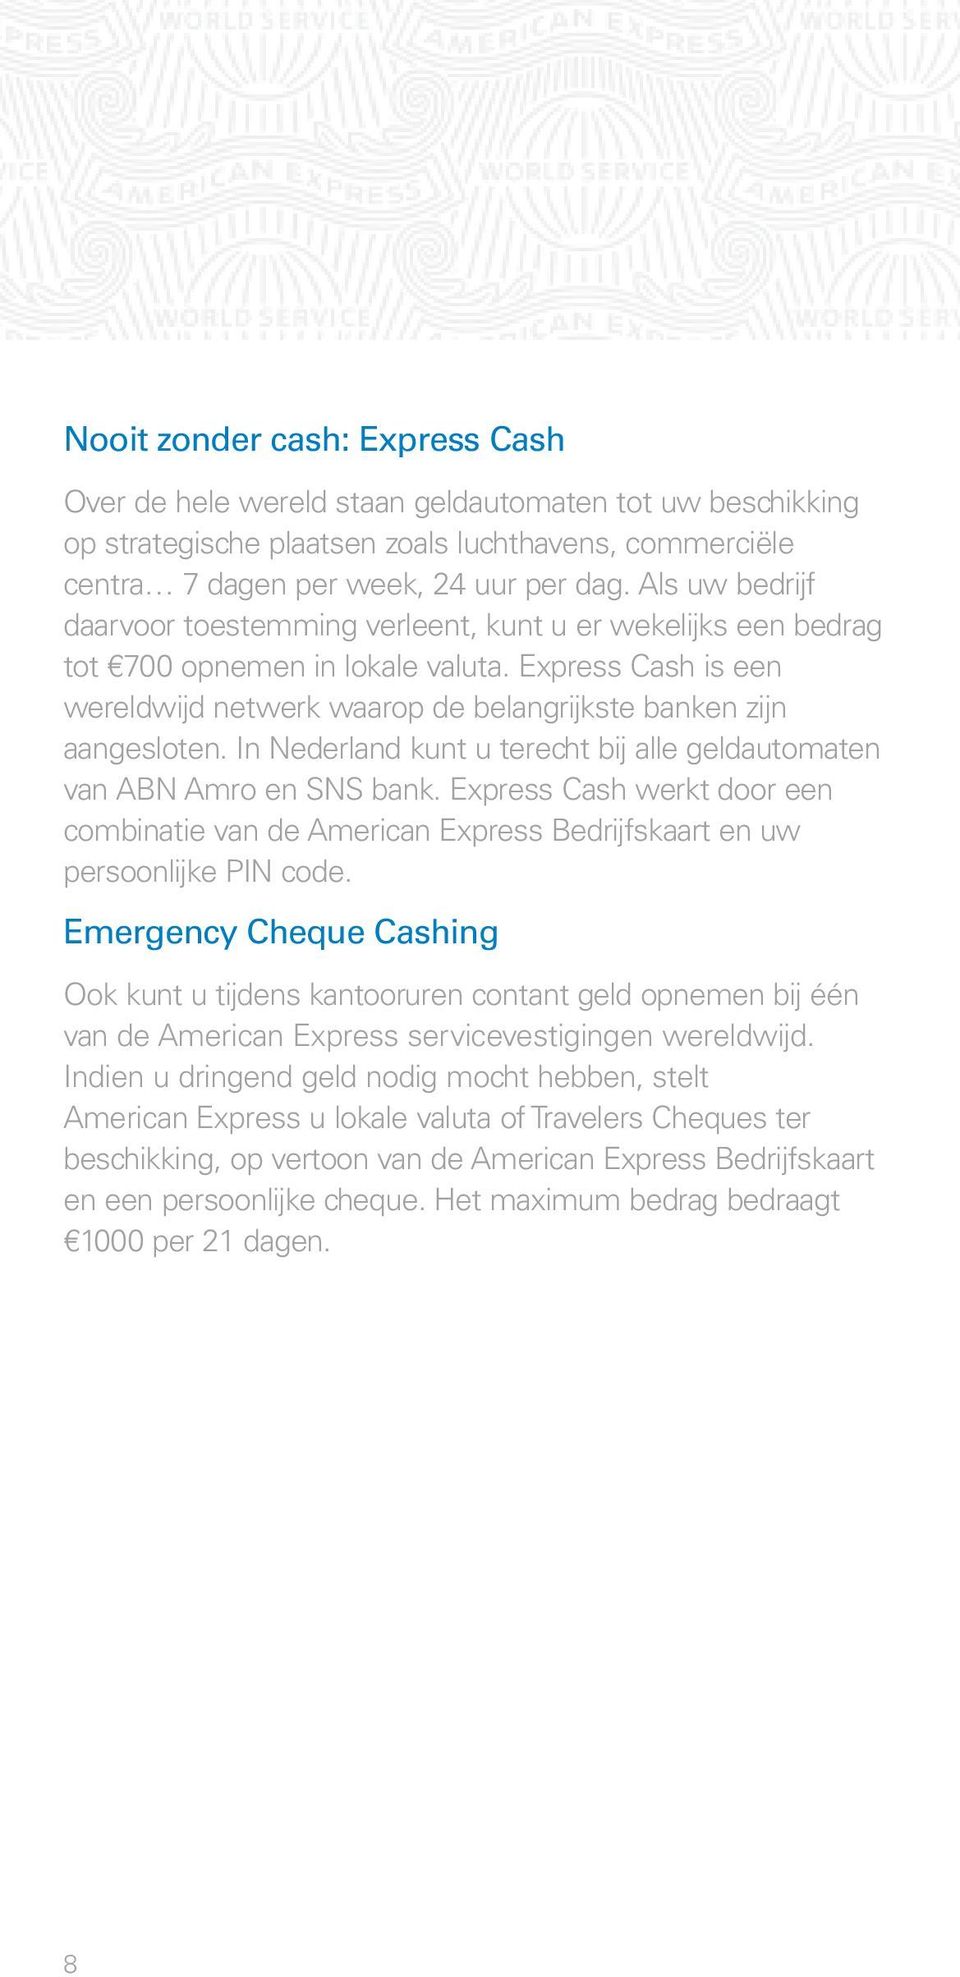 In Nederland kunt u terecht bij alle geldautomaten van ABN Amro en SNS bank. Express Cash werkt door een combinatie van de American Express Bedrijfskaart en uw persoonlijke PIN code.